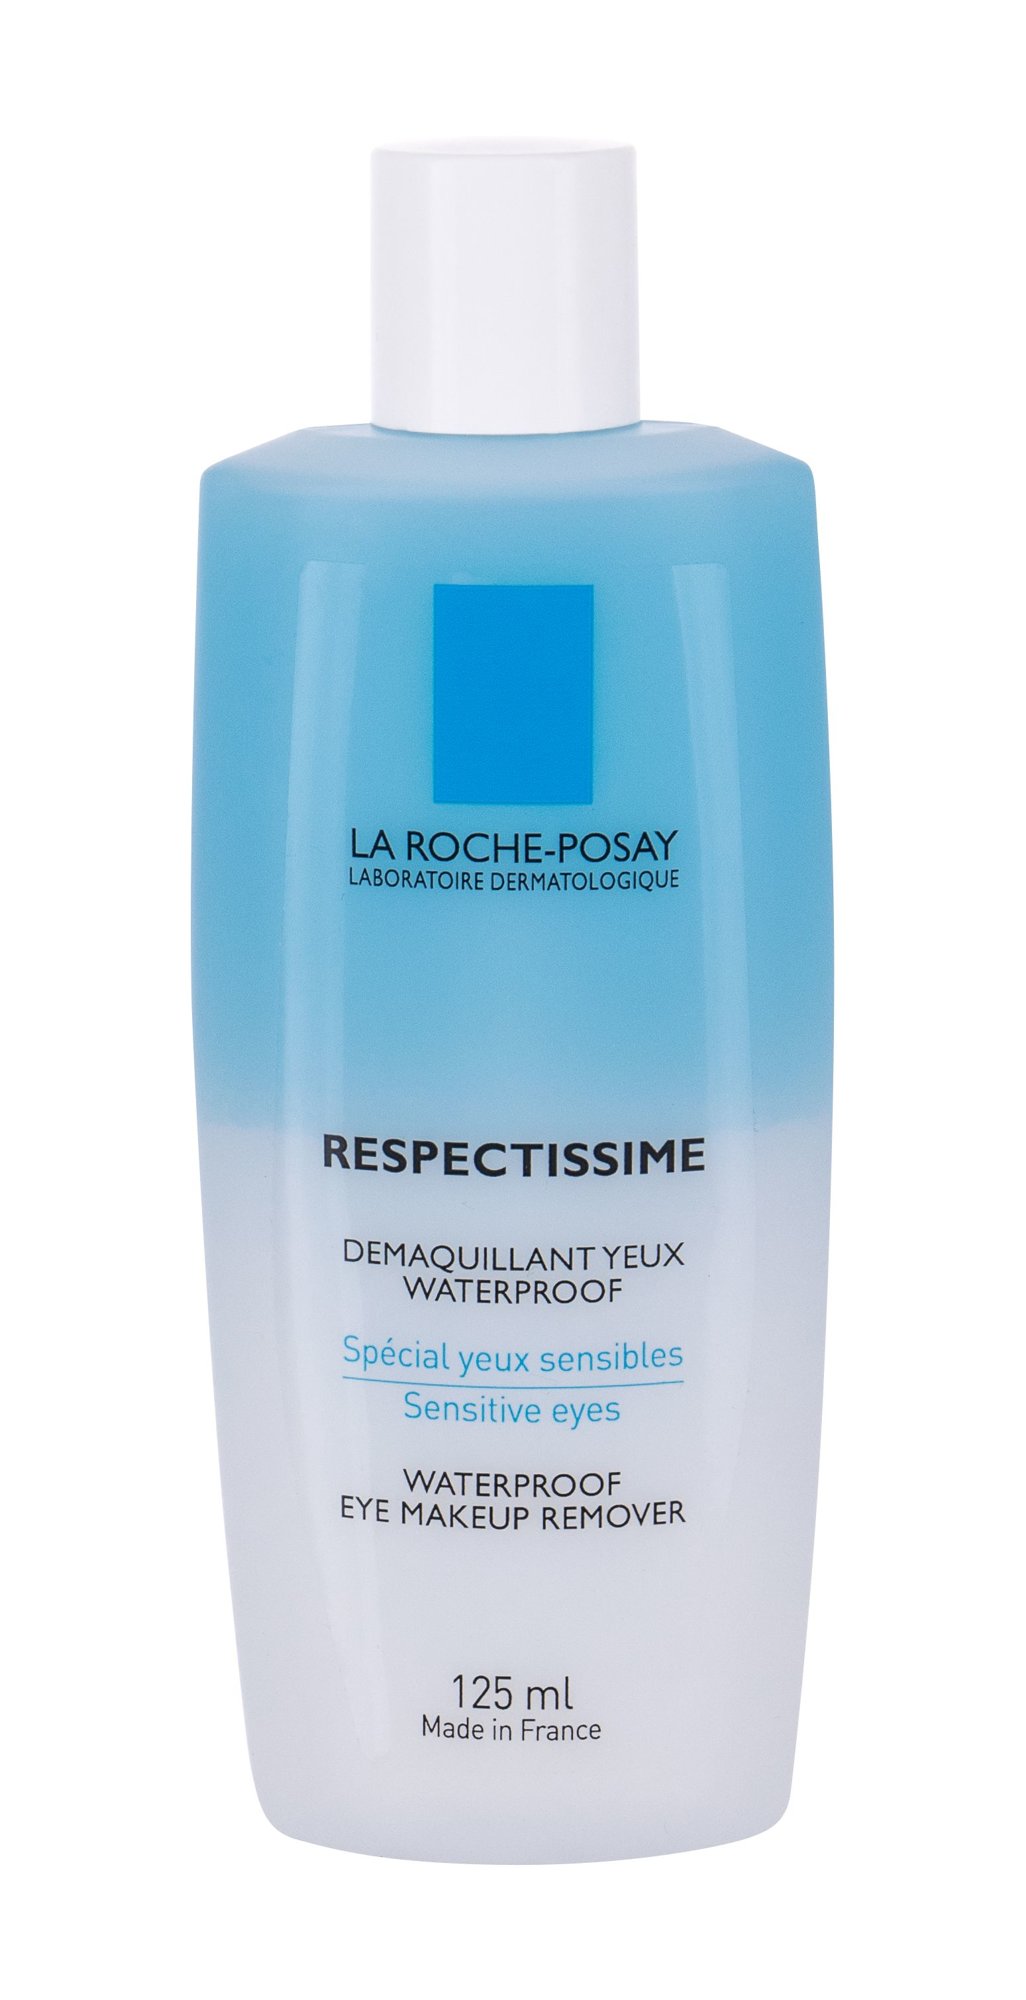 La Roche-Posay Respectissime akių makiažo valiklis